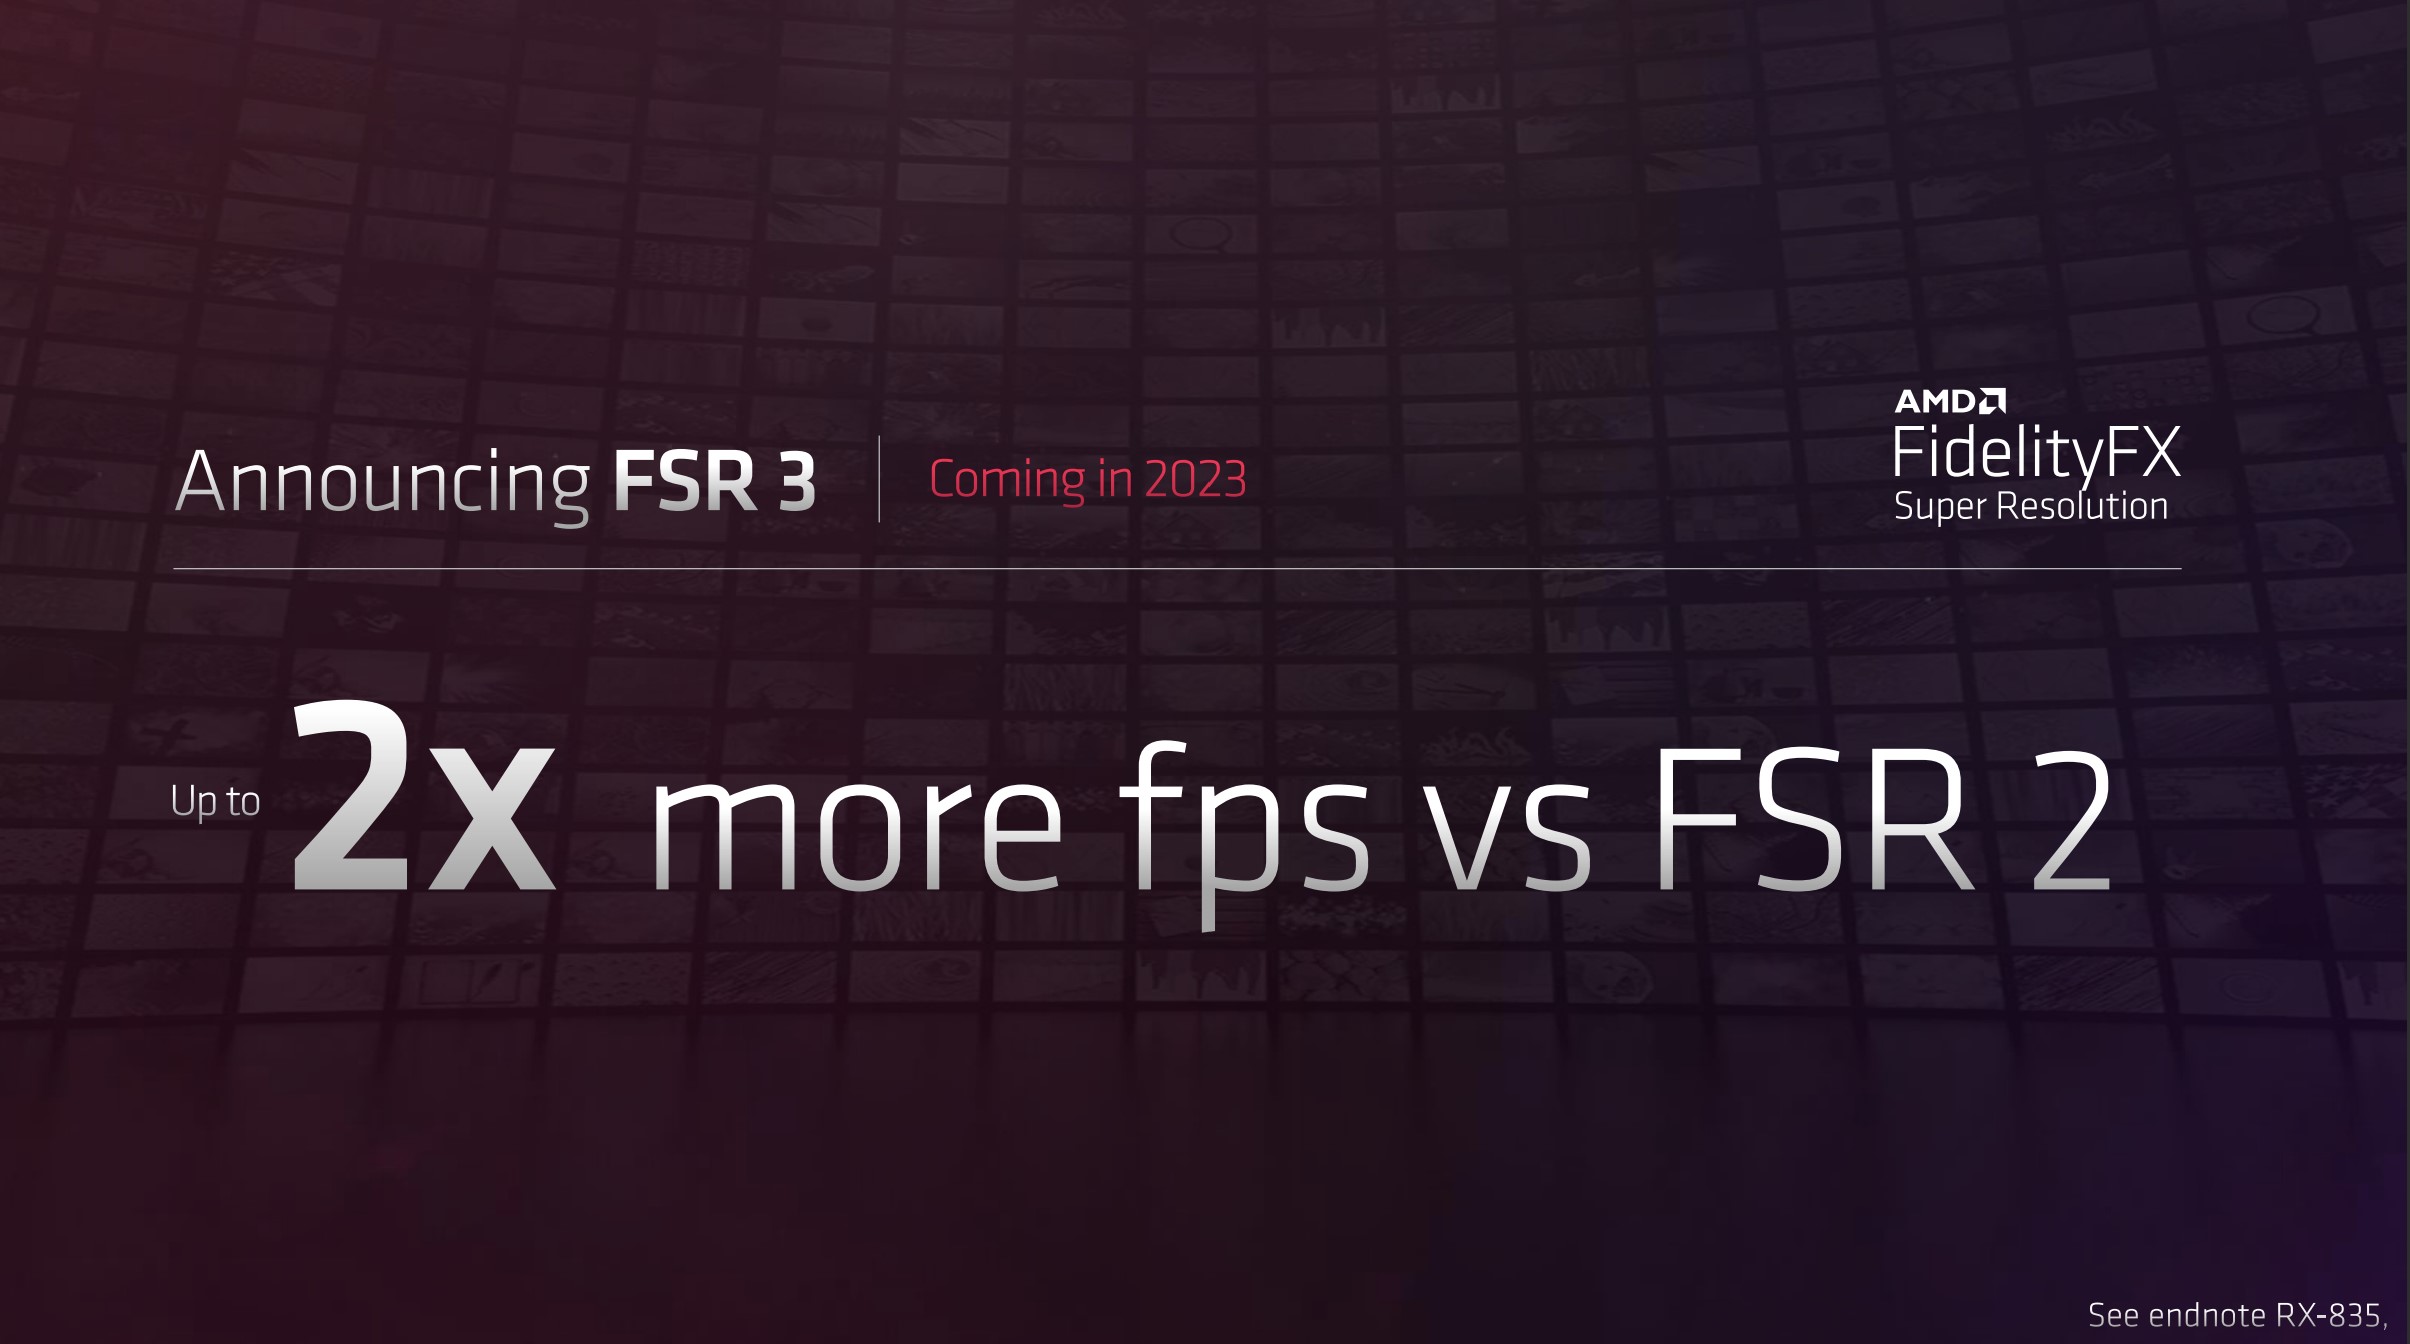 Una diapositiva que muestra detalles sobre FSR 3.